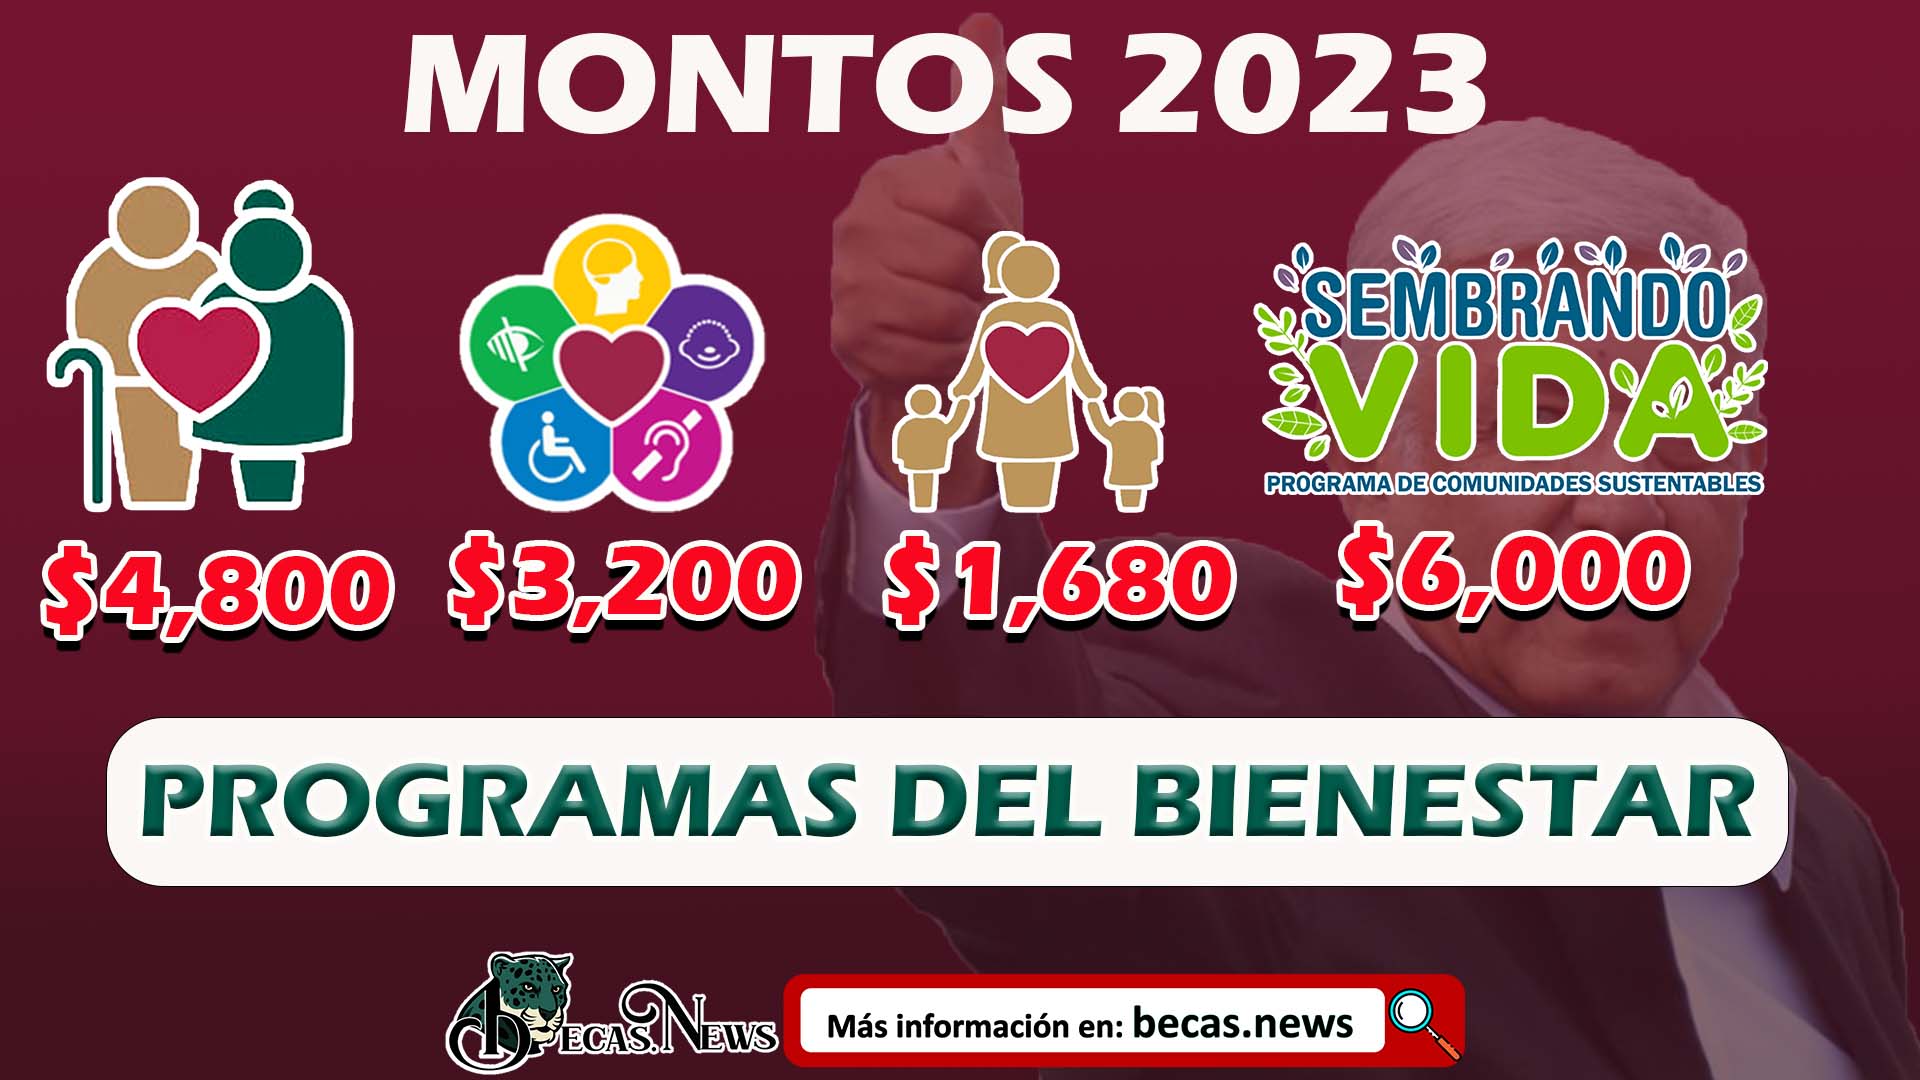 Así queda el AUMENTO de los PROGRAMAS BIENESTAR 2023; Andrés Manuel López Obrador BECAS.NEWS